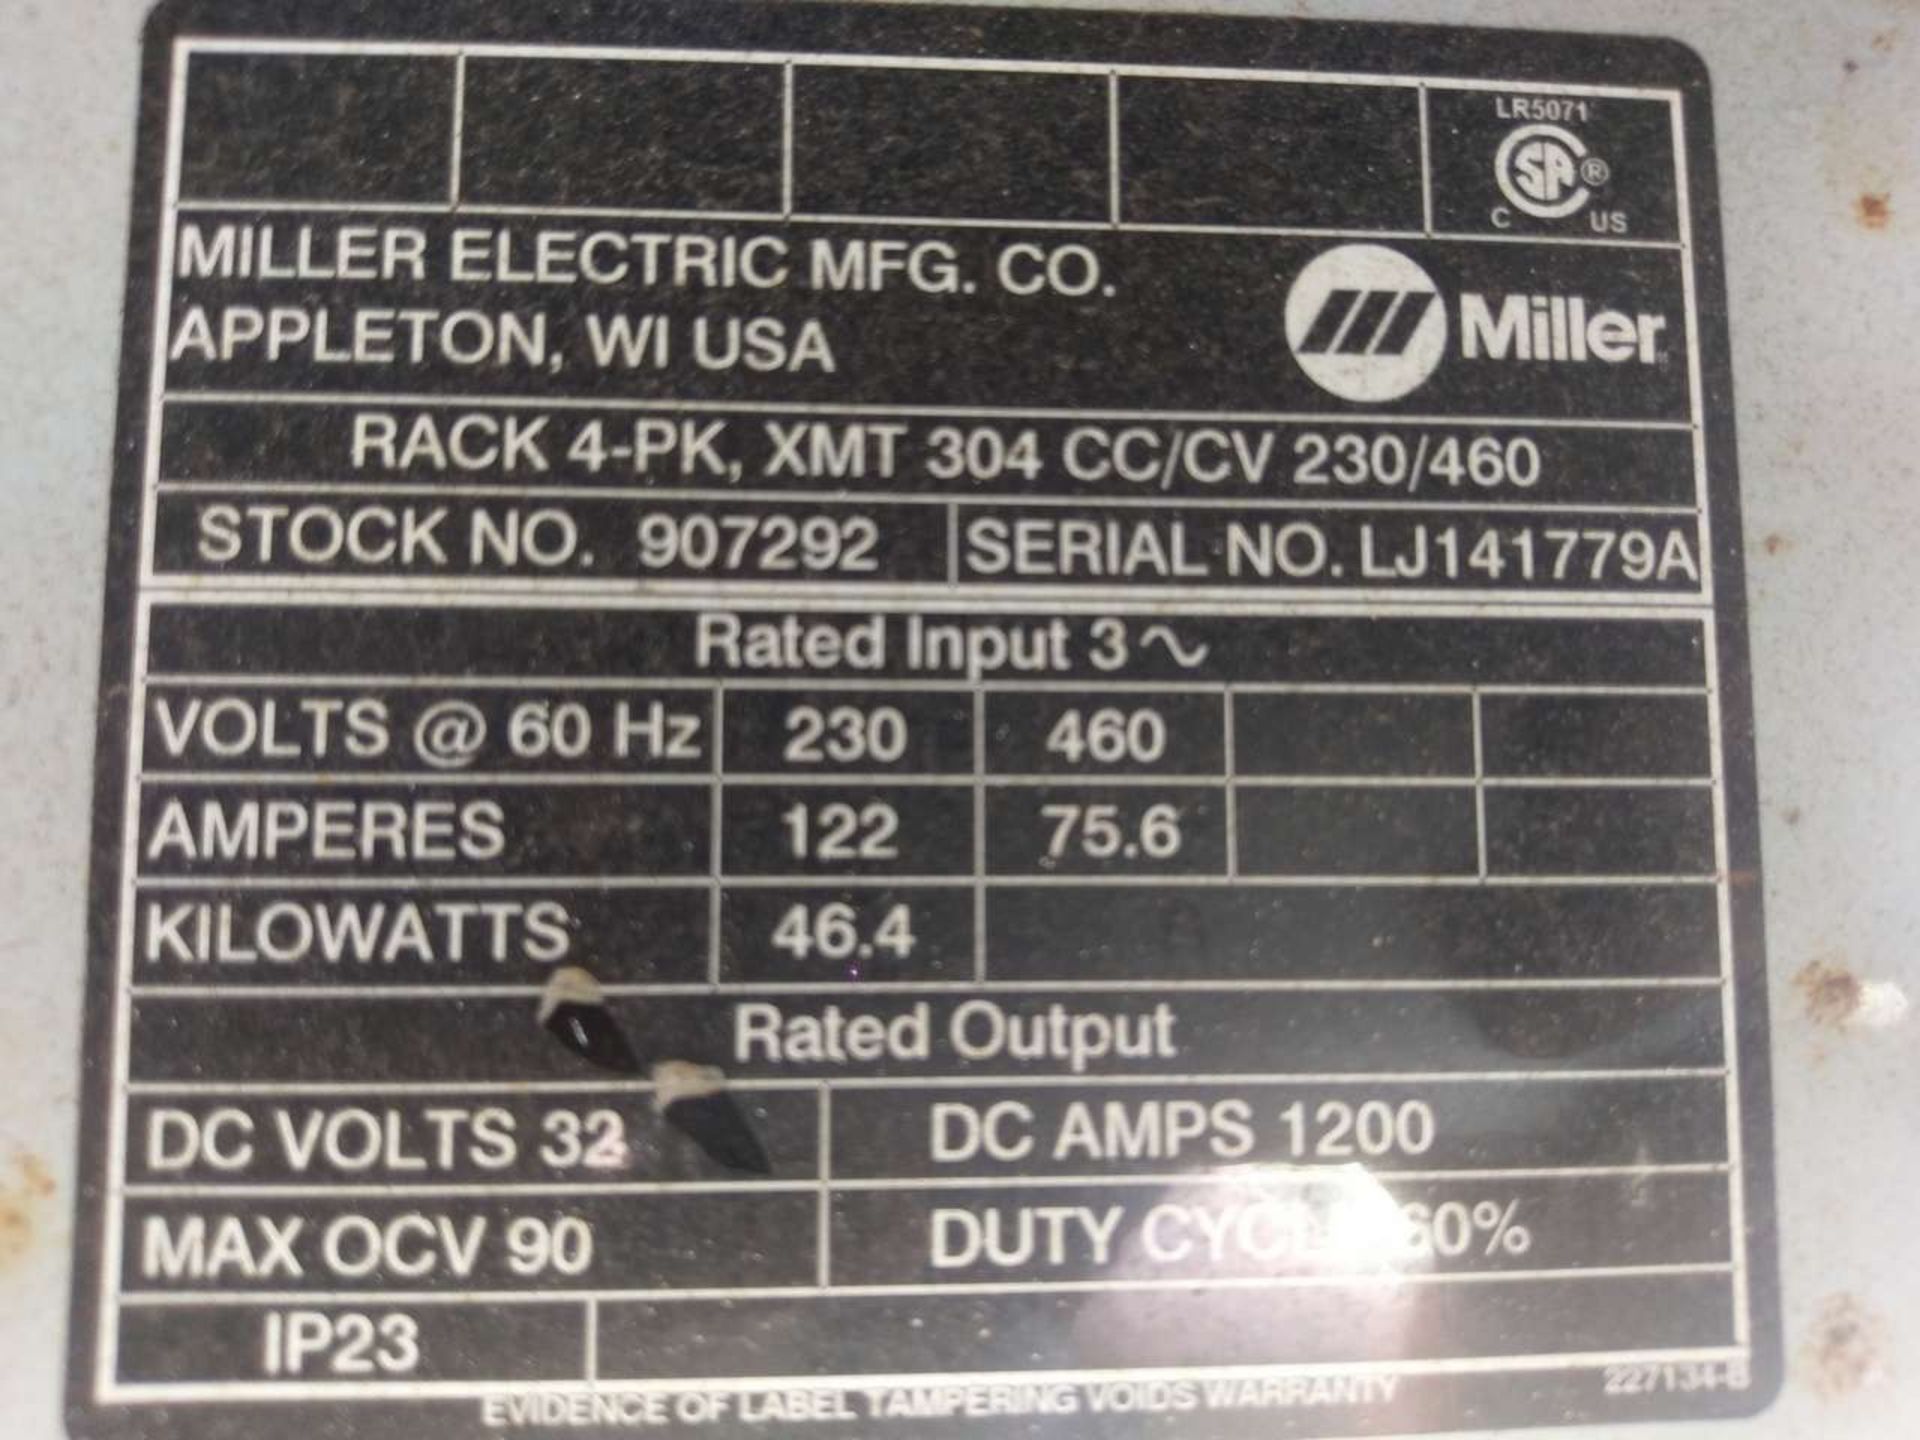 Miller XMT 304 CC/CV (4) DC Inverter Arc Welder - Image 19 of 19